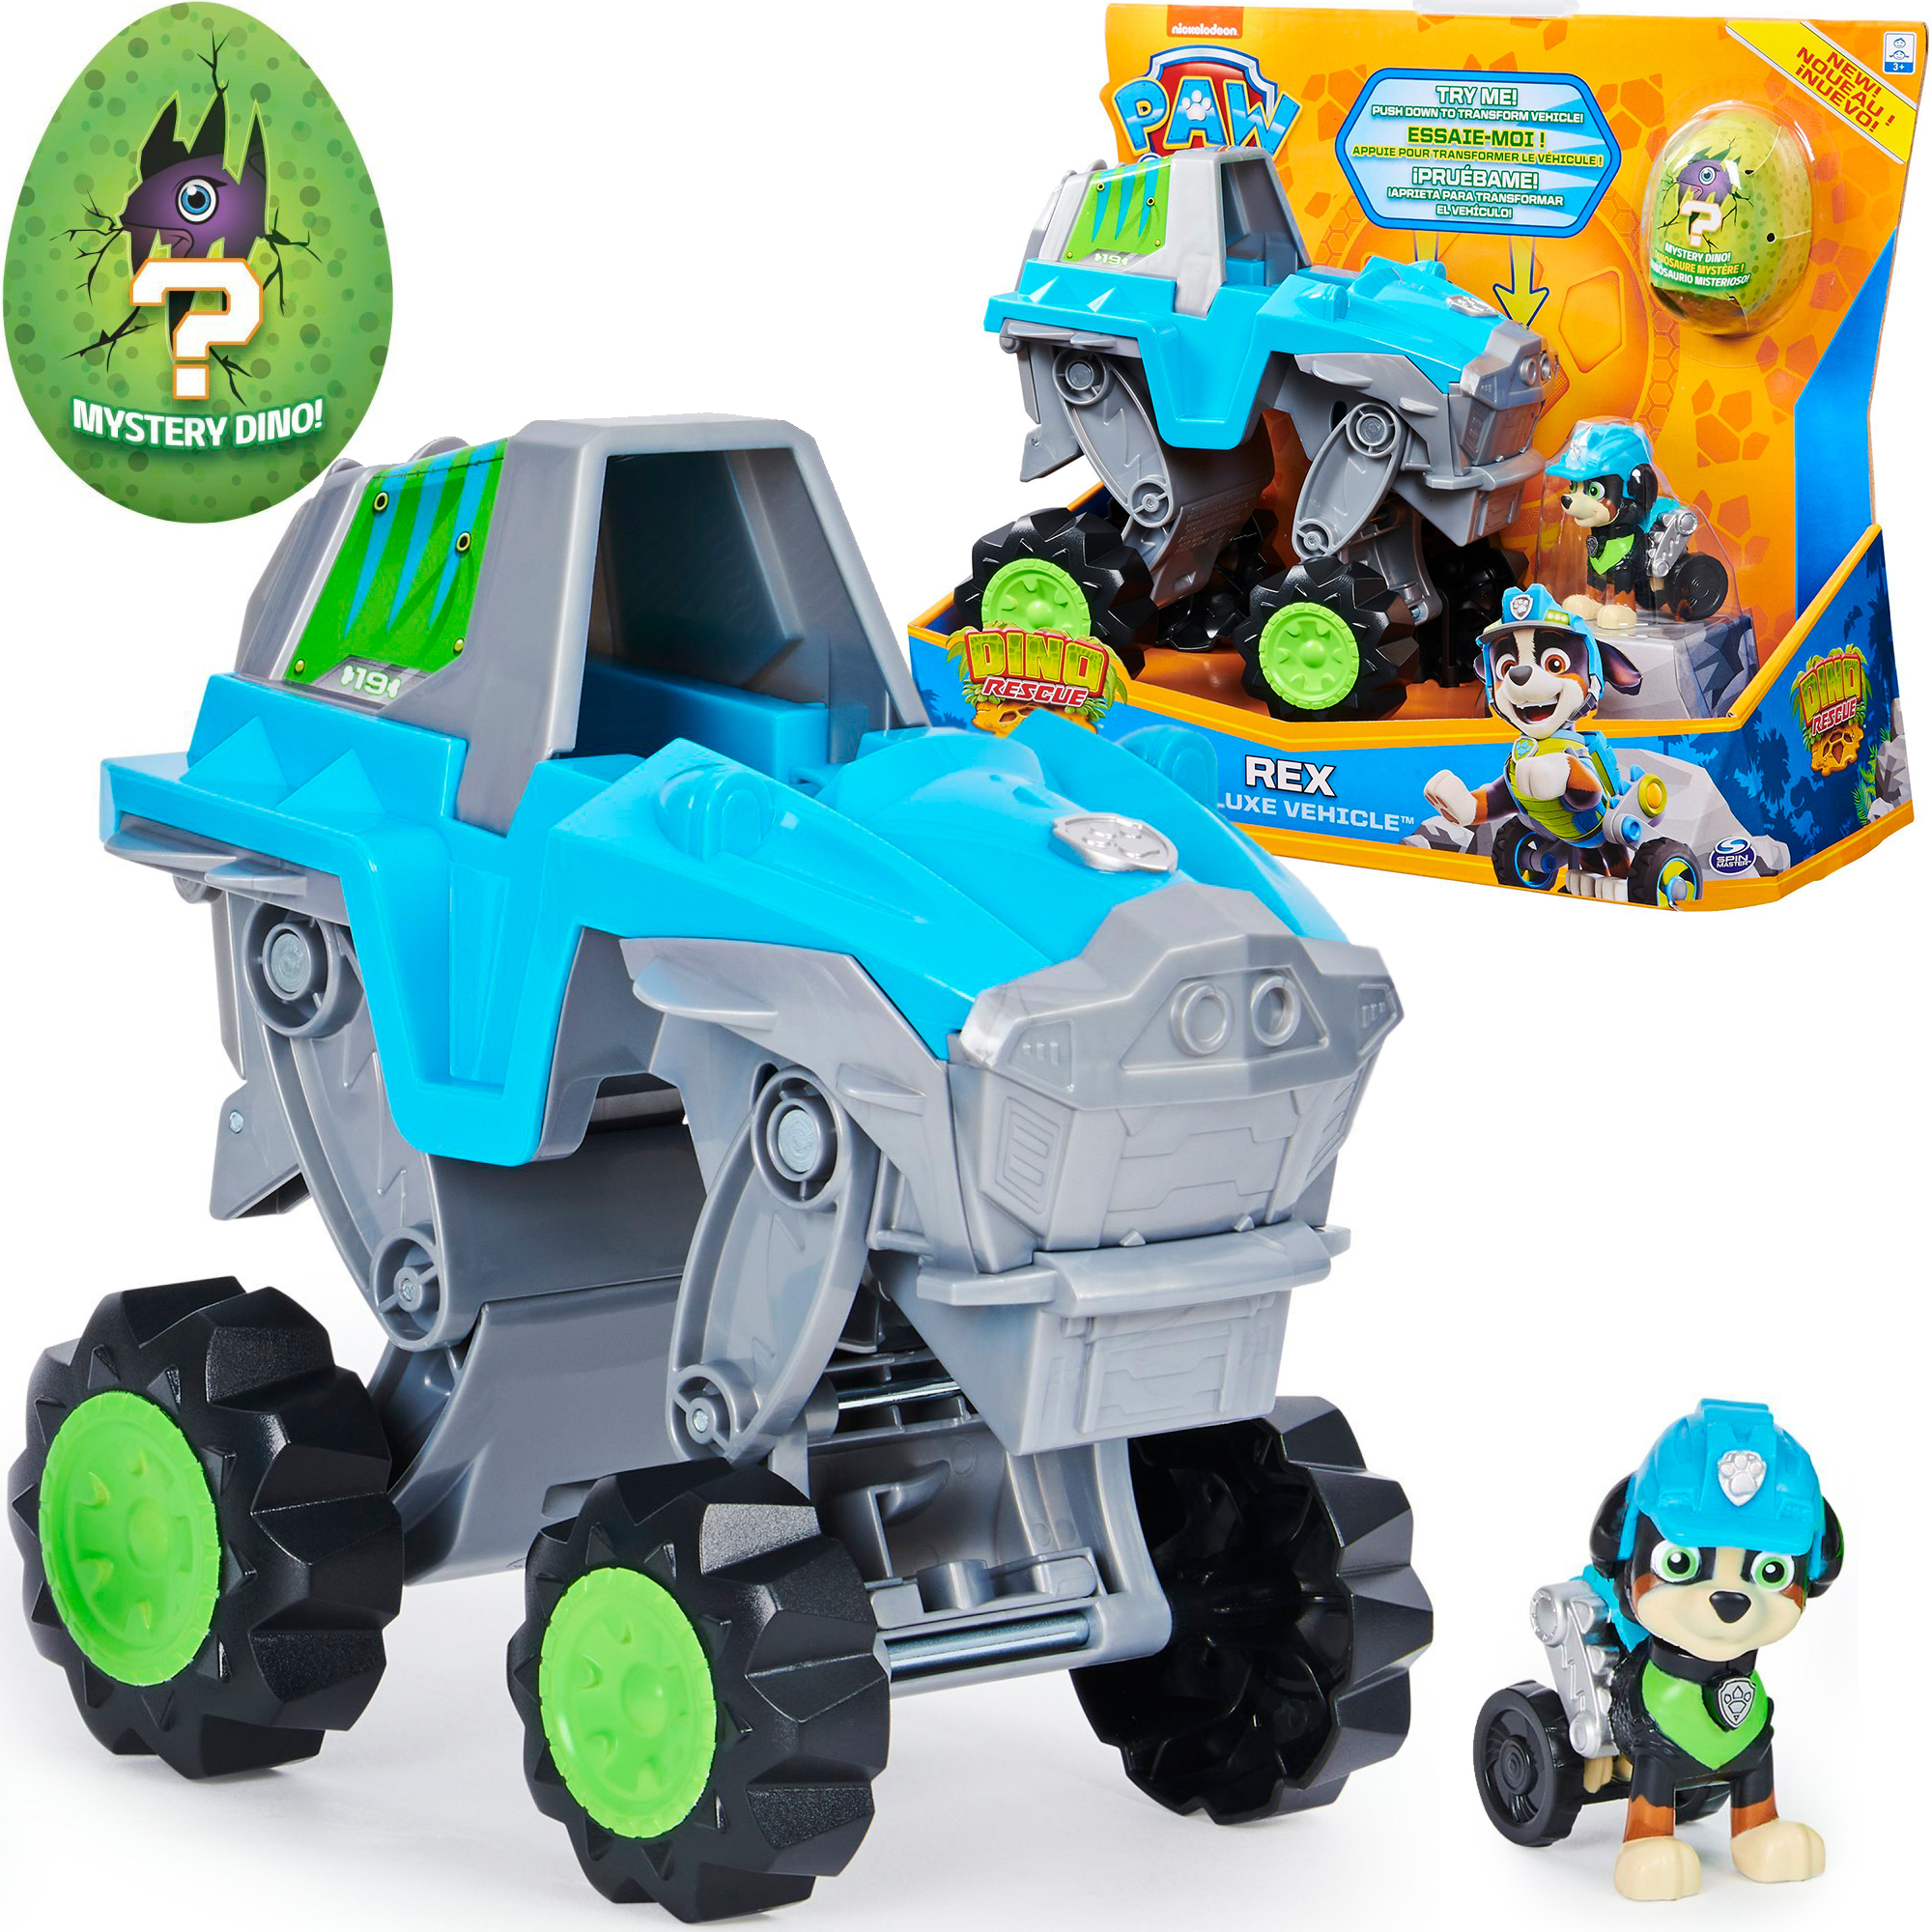 Psi Patrol 3w1 Dino Rescue figurka Rex du¿y pojazd samochód + dinozaur niespodzianka